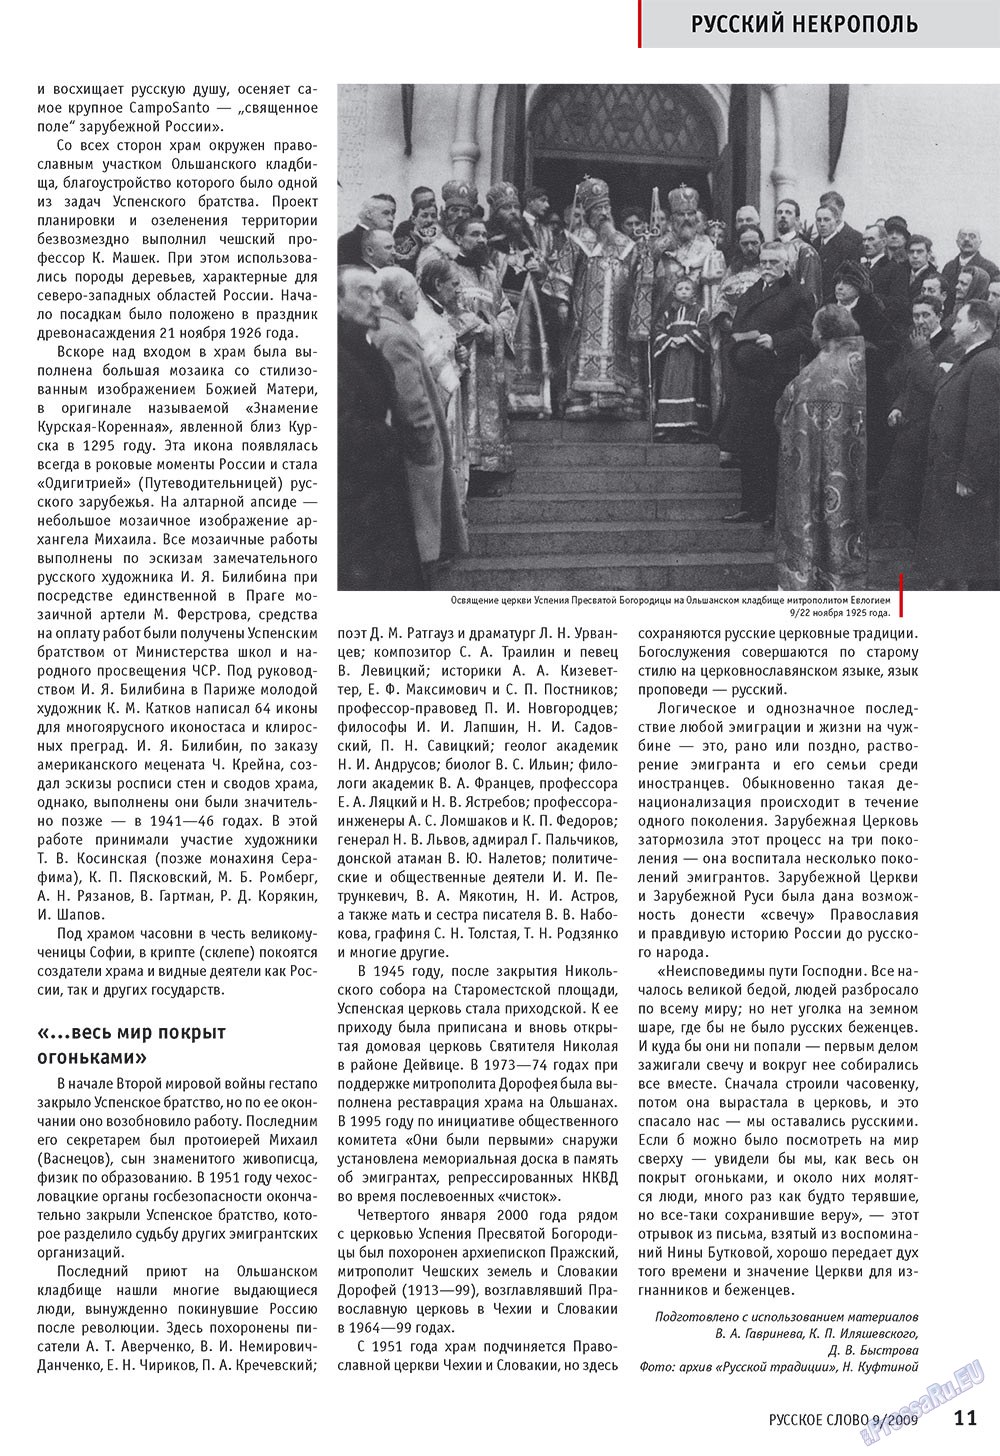 Русское слово, журнал. 2009 №9 стр.13